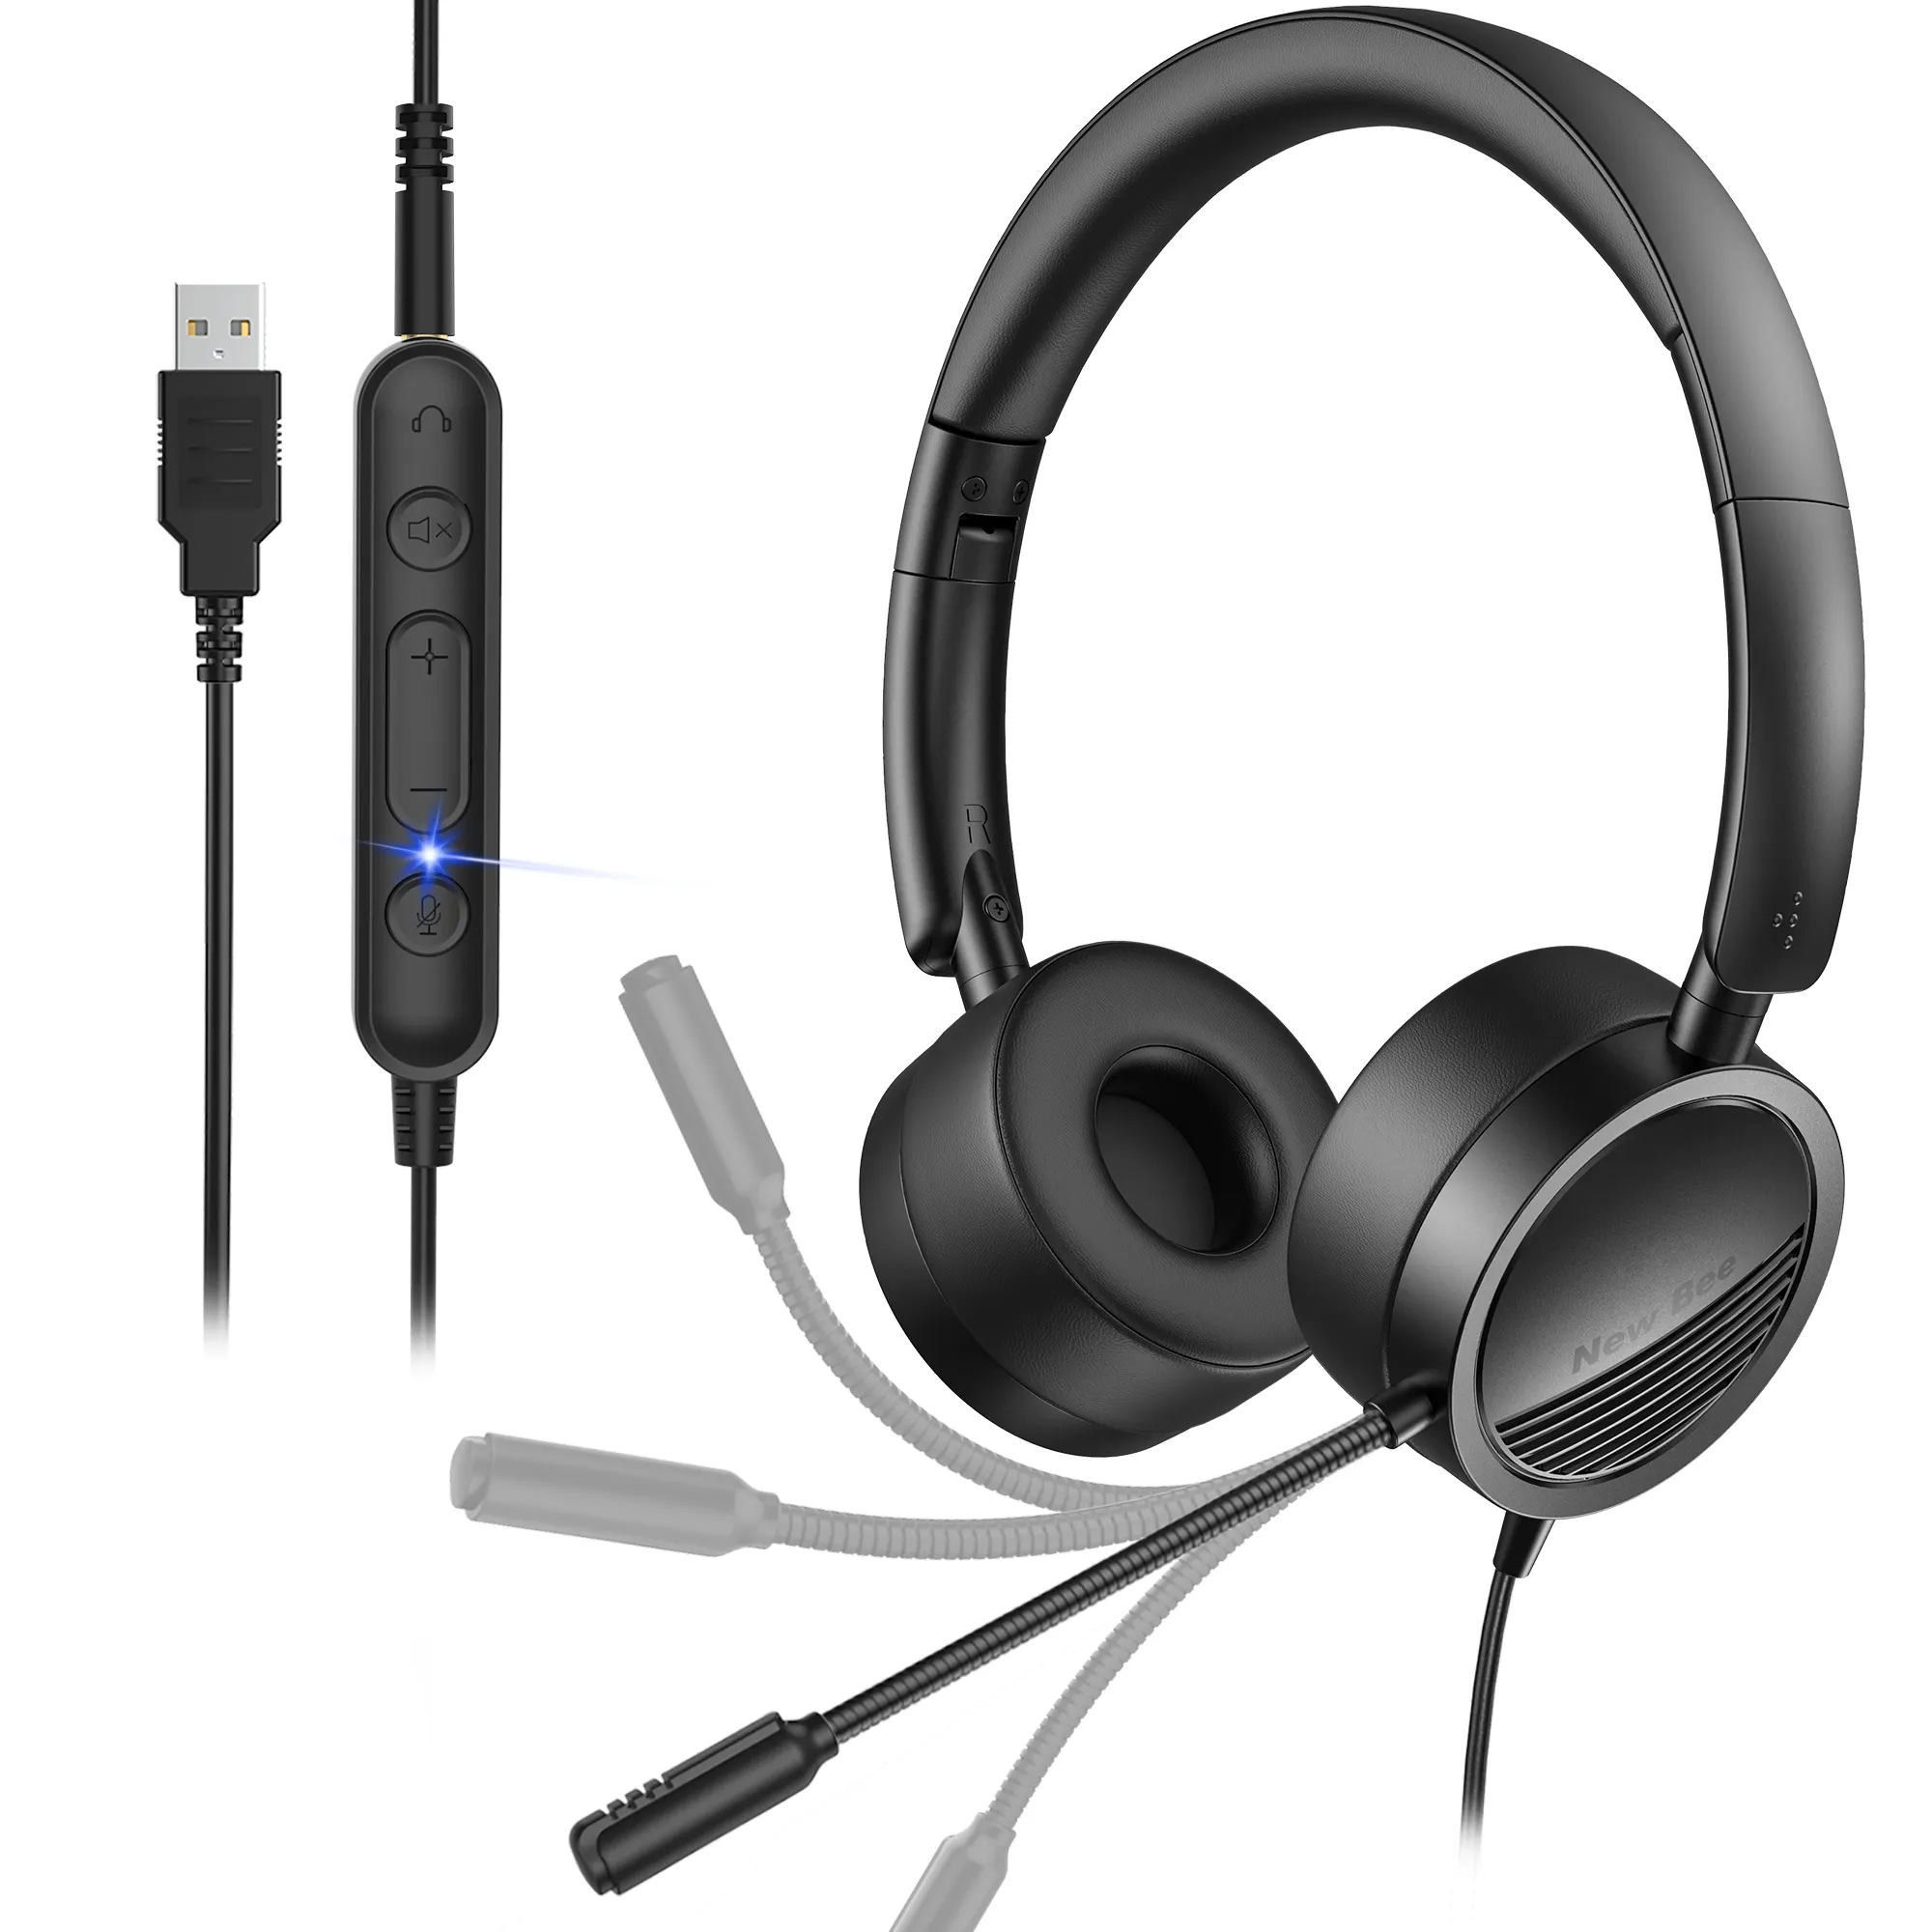 אוזניות סטריאו משרדיות Bee H360 חדשות עם מיקרופון מבטל רעשים שליטה מקוונת אוזניות USB חוטיות למחשב/Mac/נייד